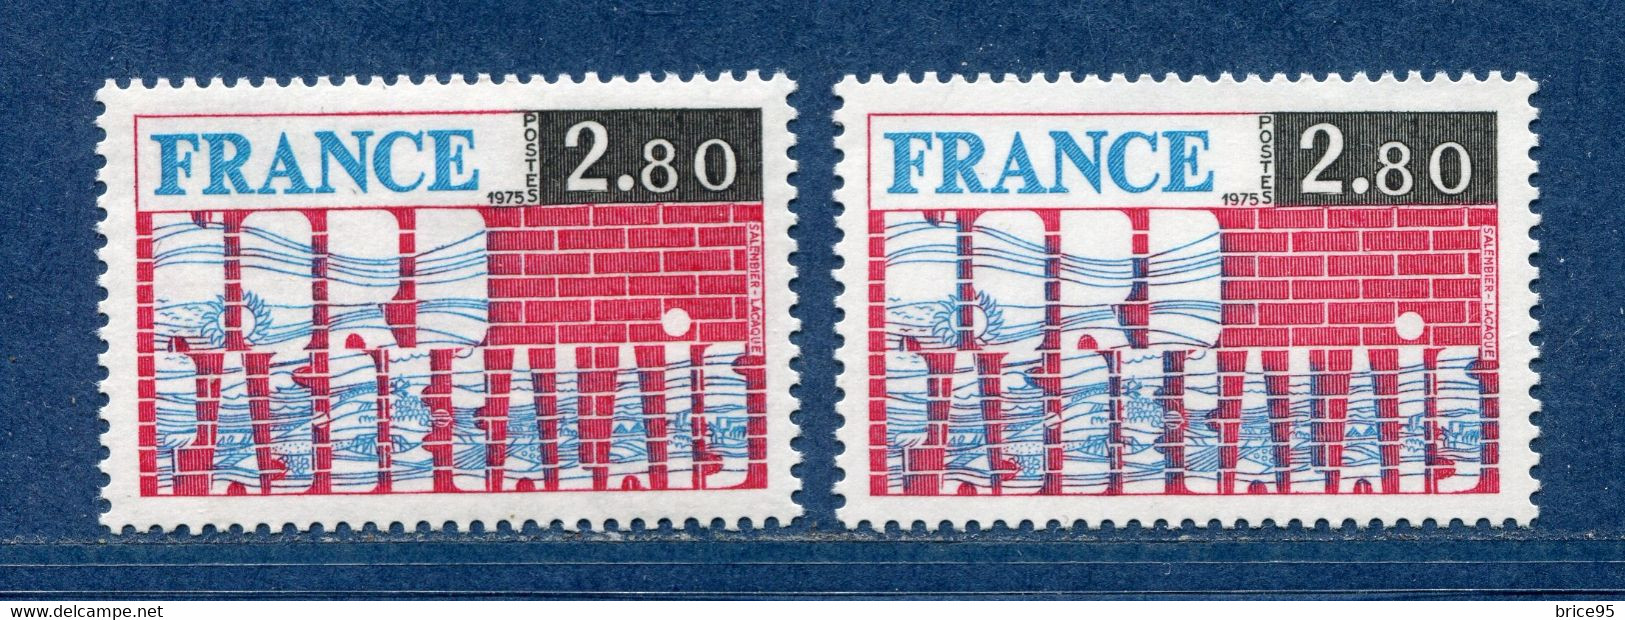 ⭐ France - Variété - YT N° 1852 - Couleurs - Pétouille - Neuf Sans Charnière - 1975 ⭐ - Unused Stamps